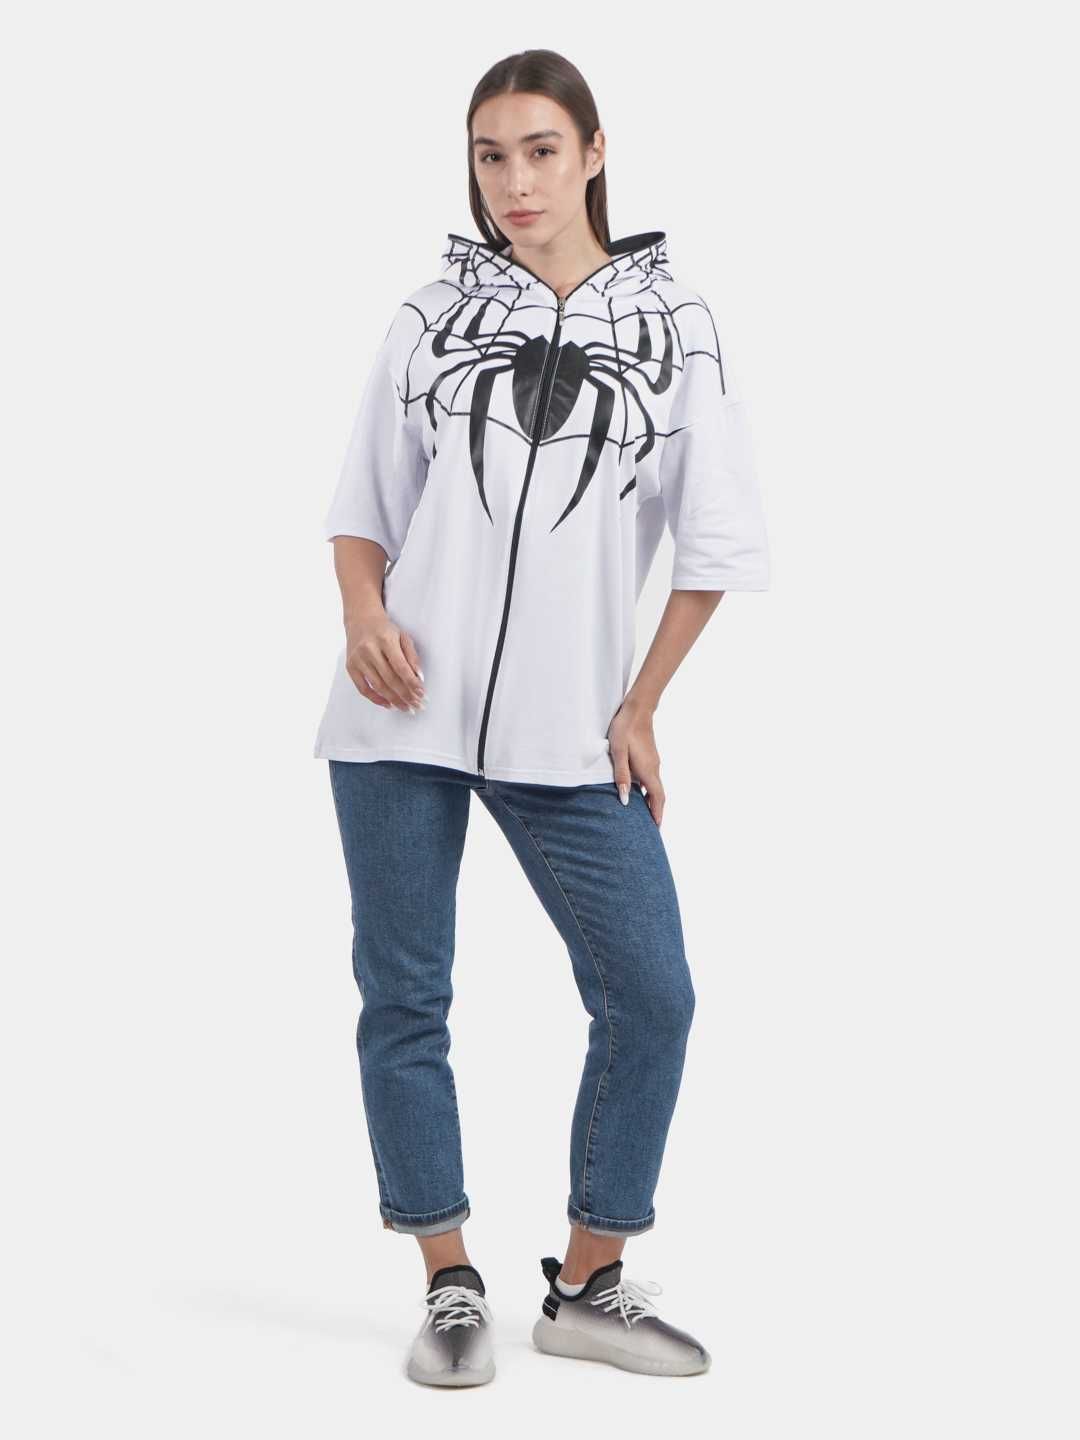 Футболка Человек паук женская, унисекс, футболка для летней погоды